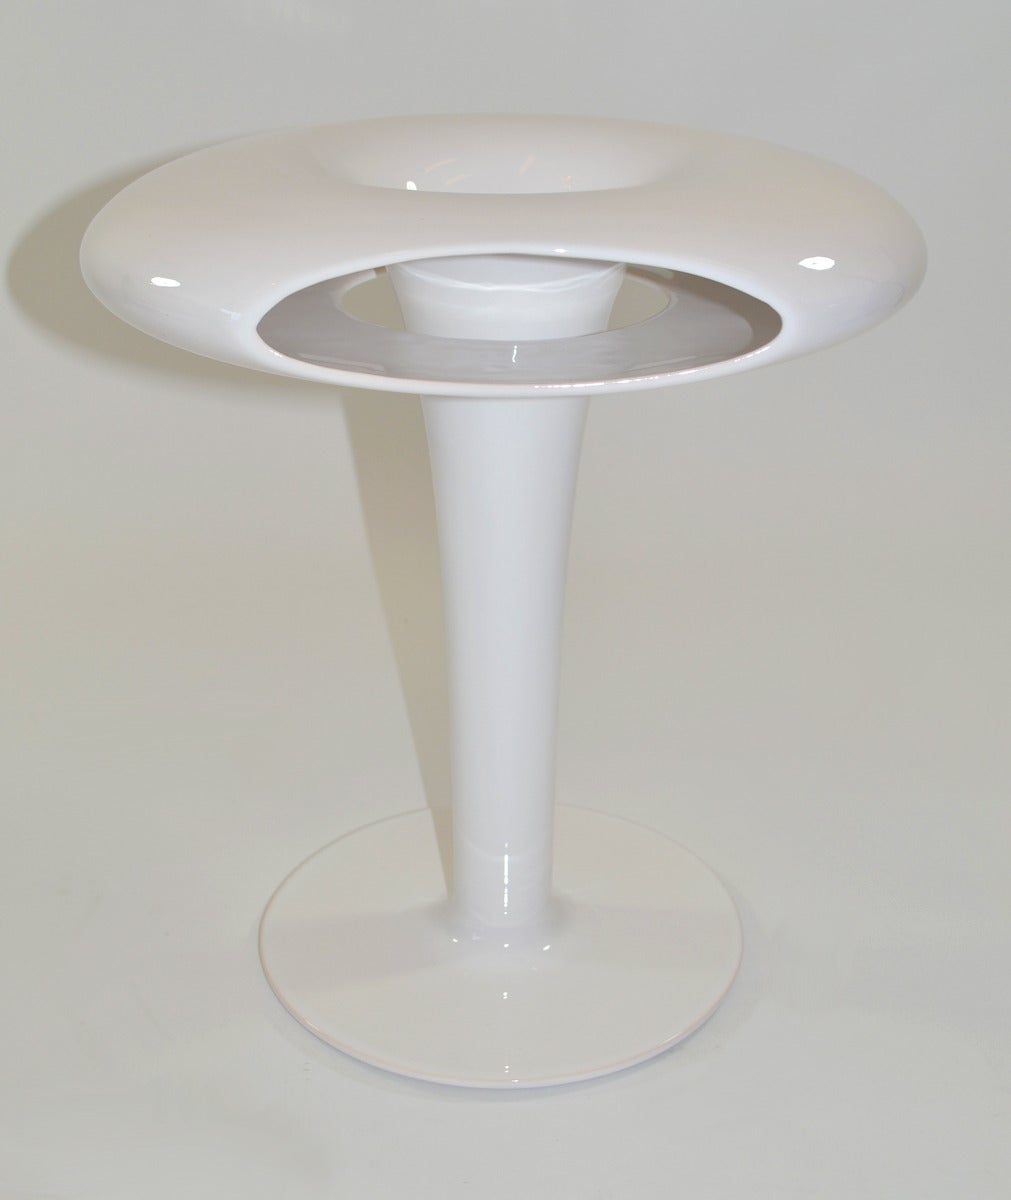 Glazed porcelain ' Sci Fi ' vase designed by Marc Newson 1993 Netherlands. Signed.